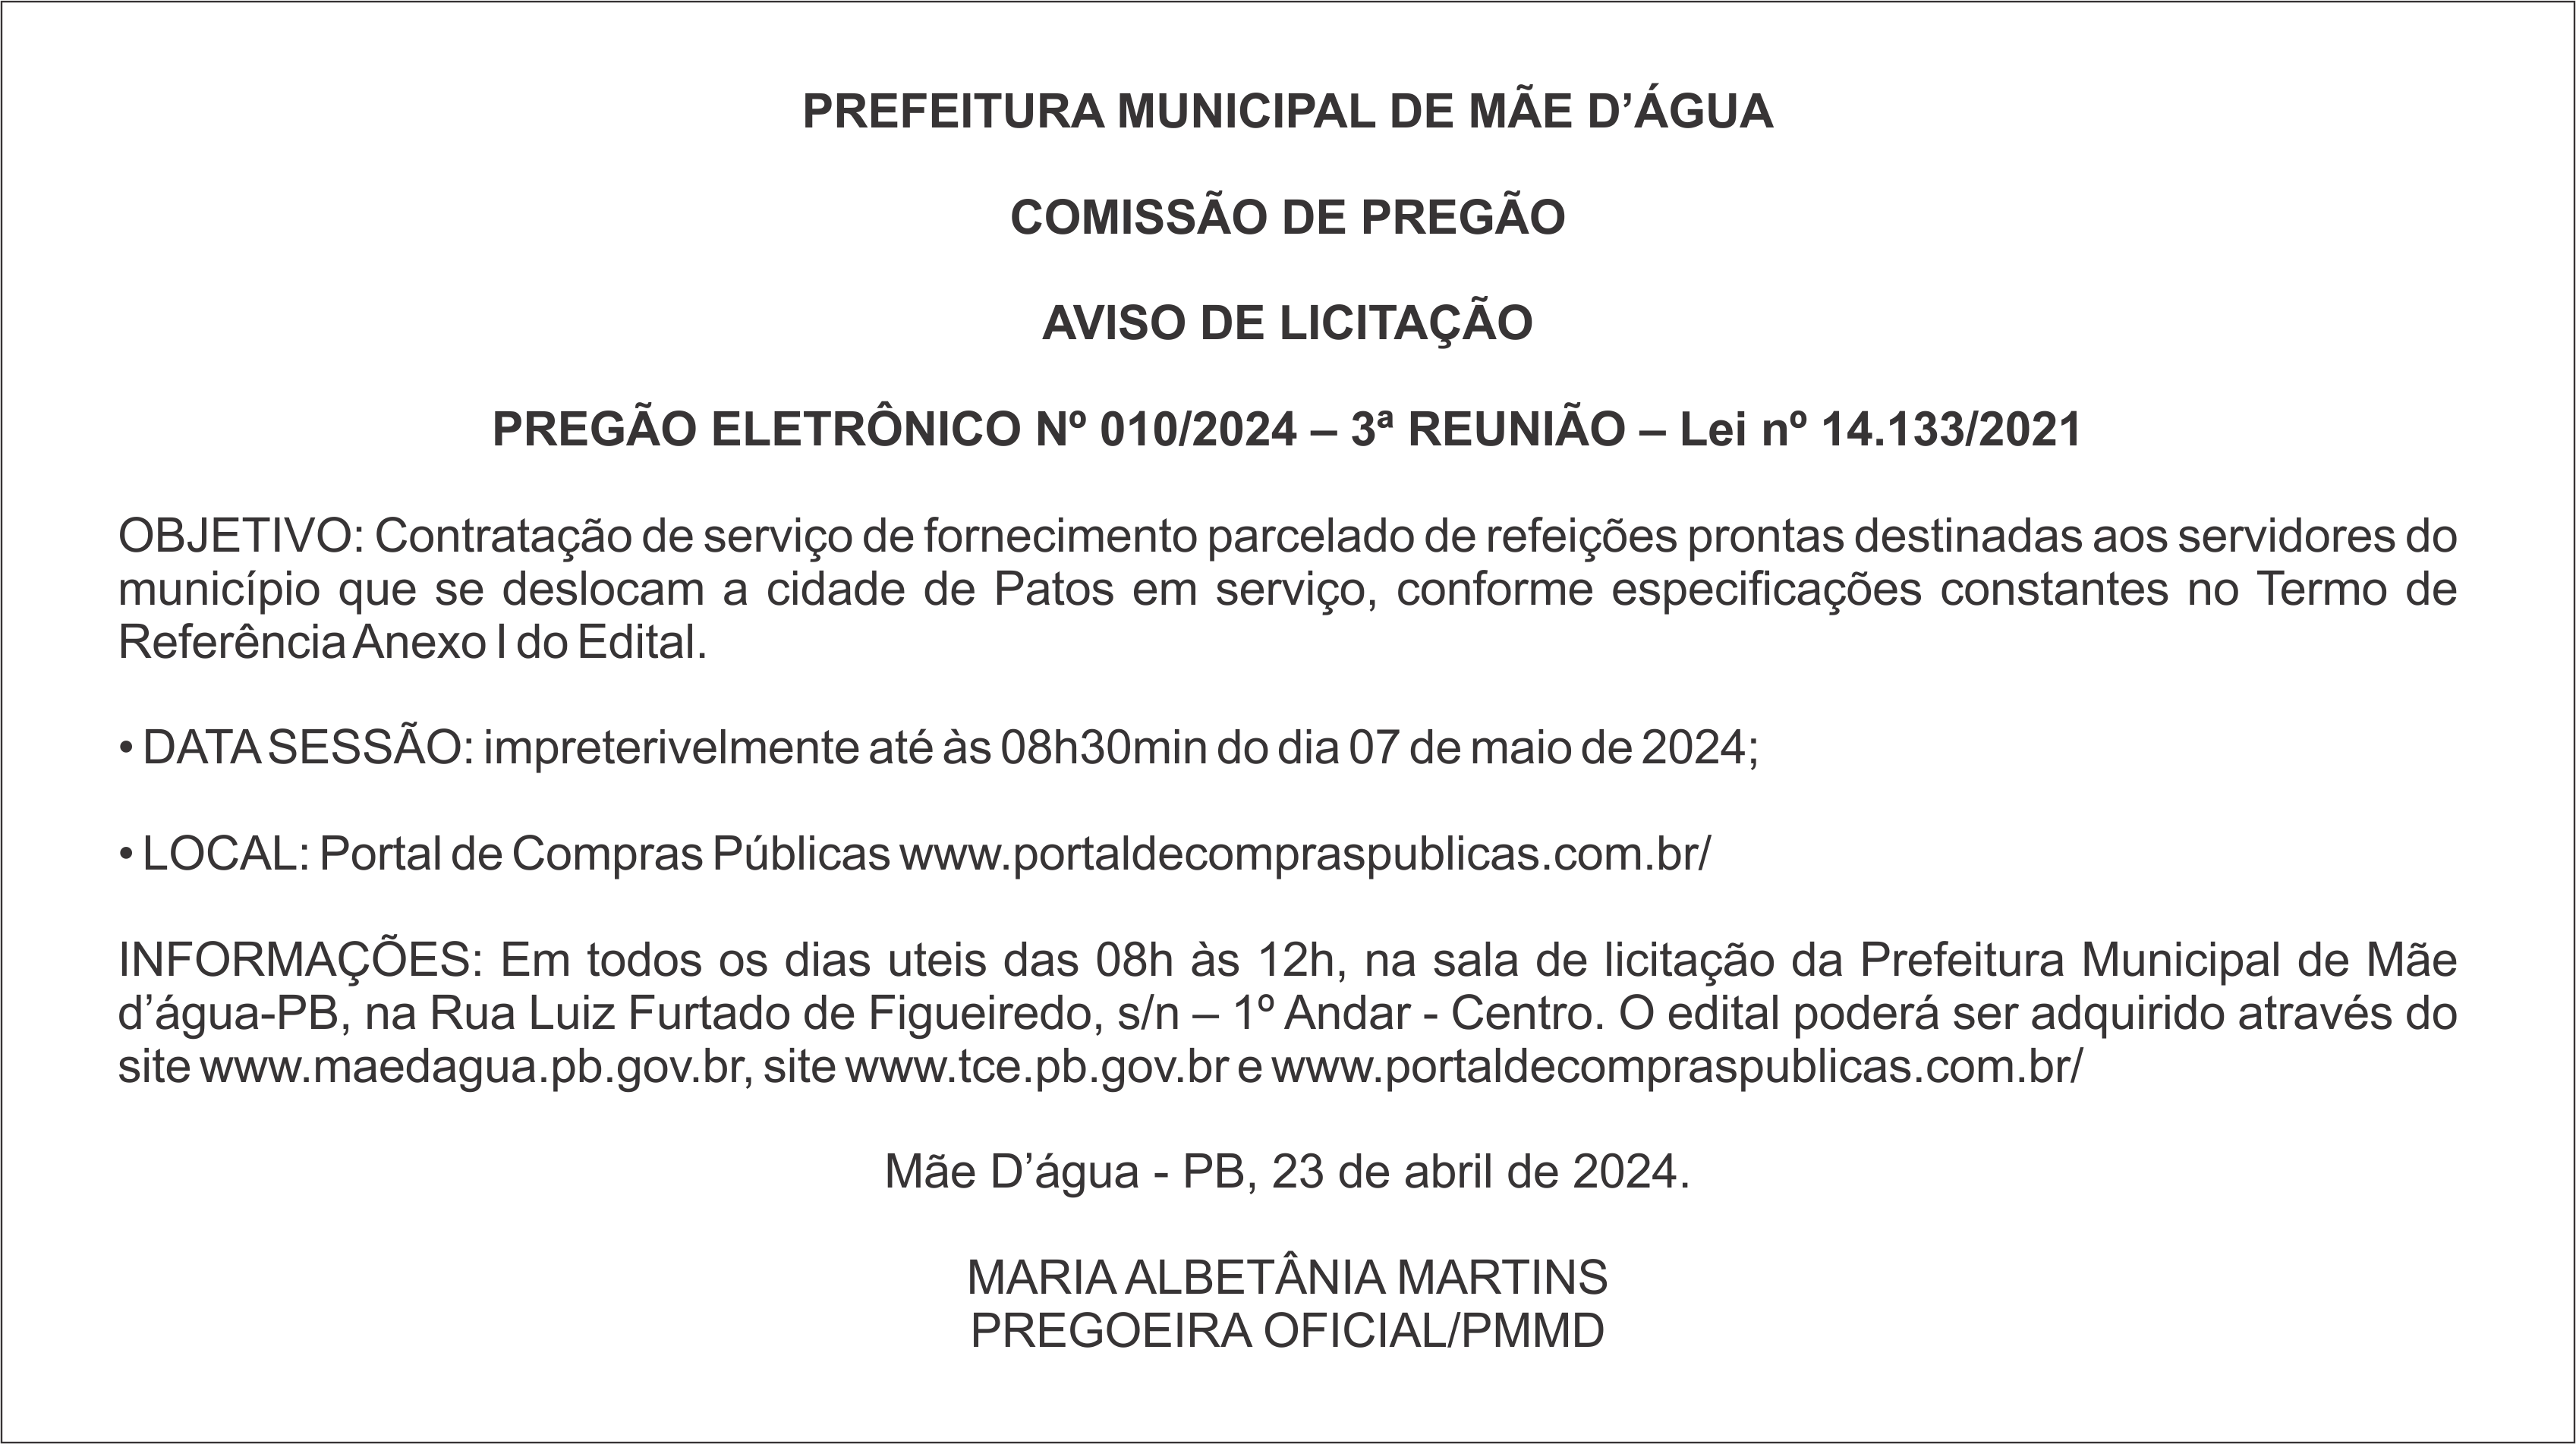 PREFEITURA MUNICIPAL DE MÃE D’ÁGUA – AVISO DE LICITAÇÃO – PREGÃO ELETRÔNICO Nº 010/2024